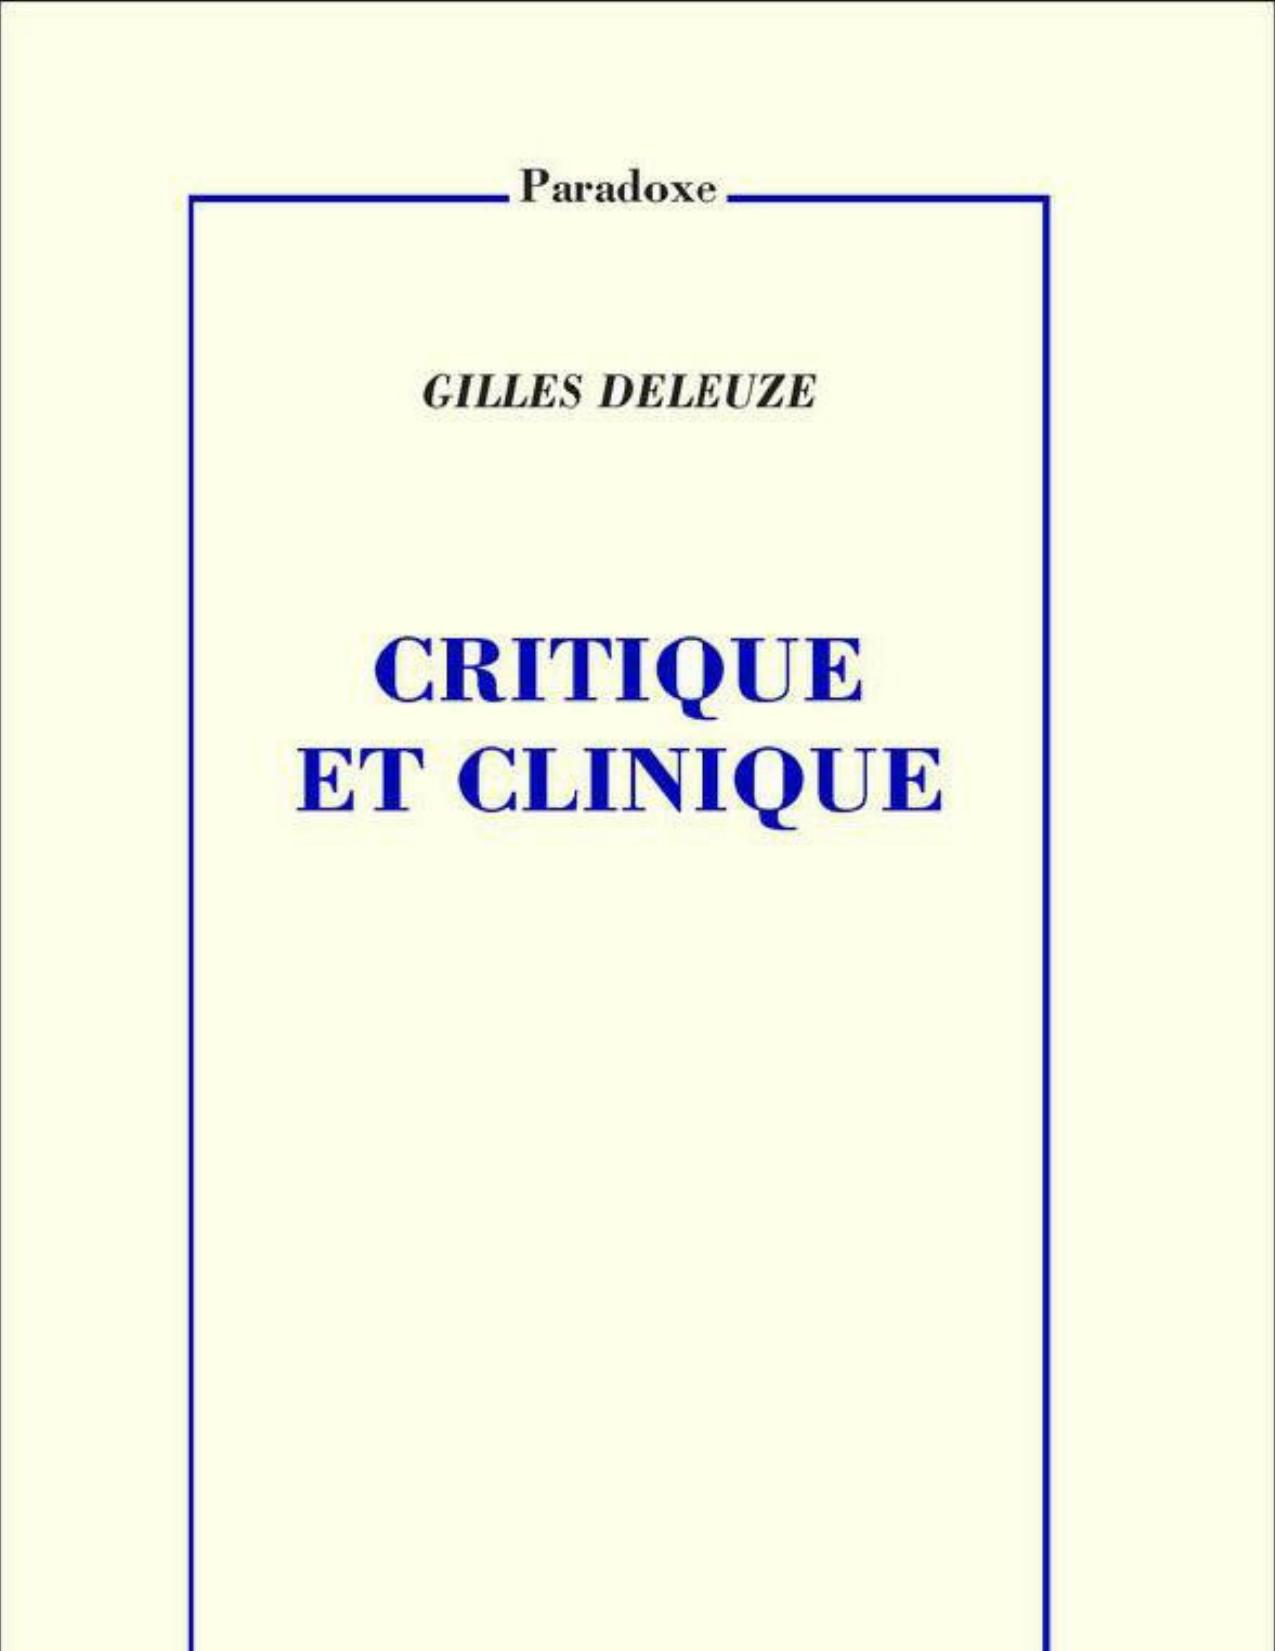 Critique et clinique (Paradoxe)